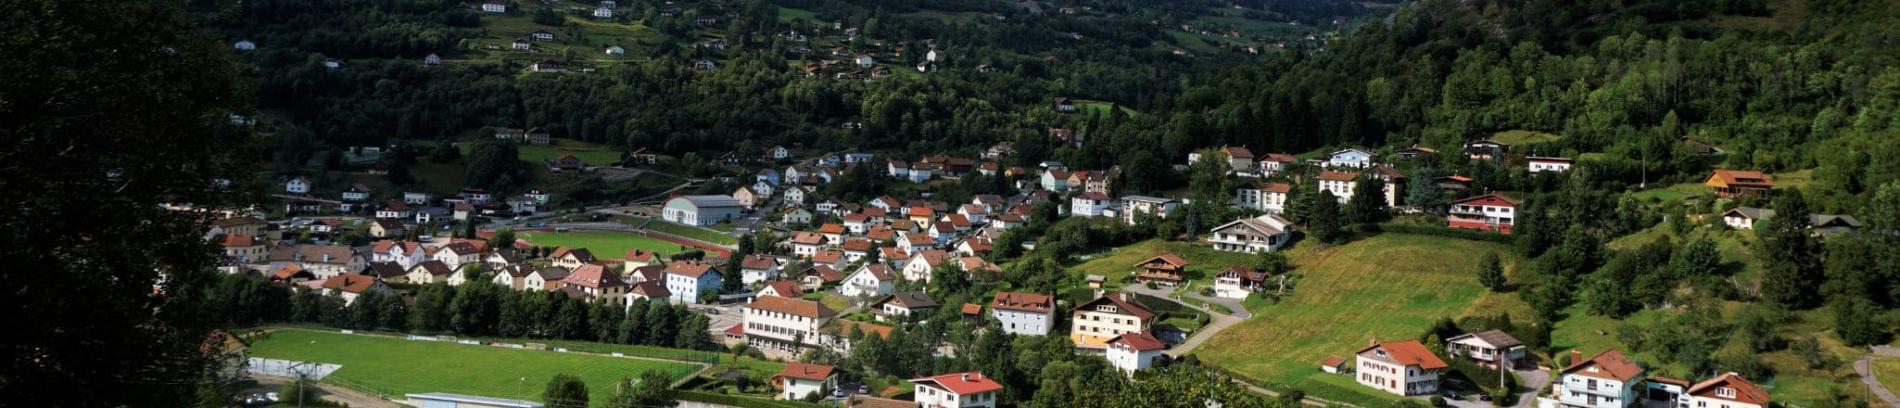 Slide Village de La Bresse dans les Vosges